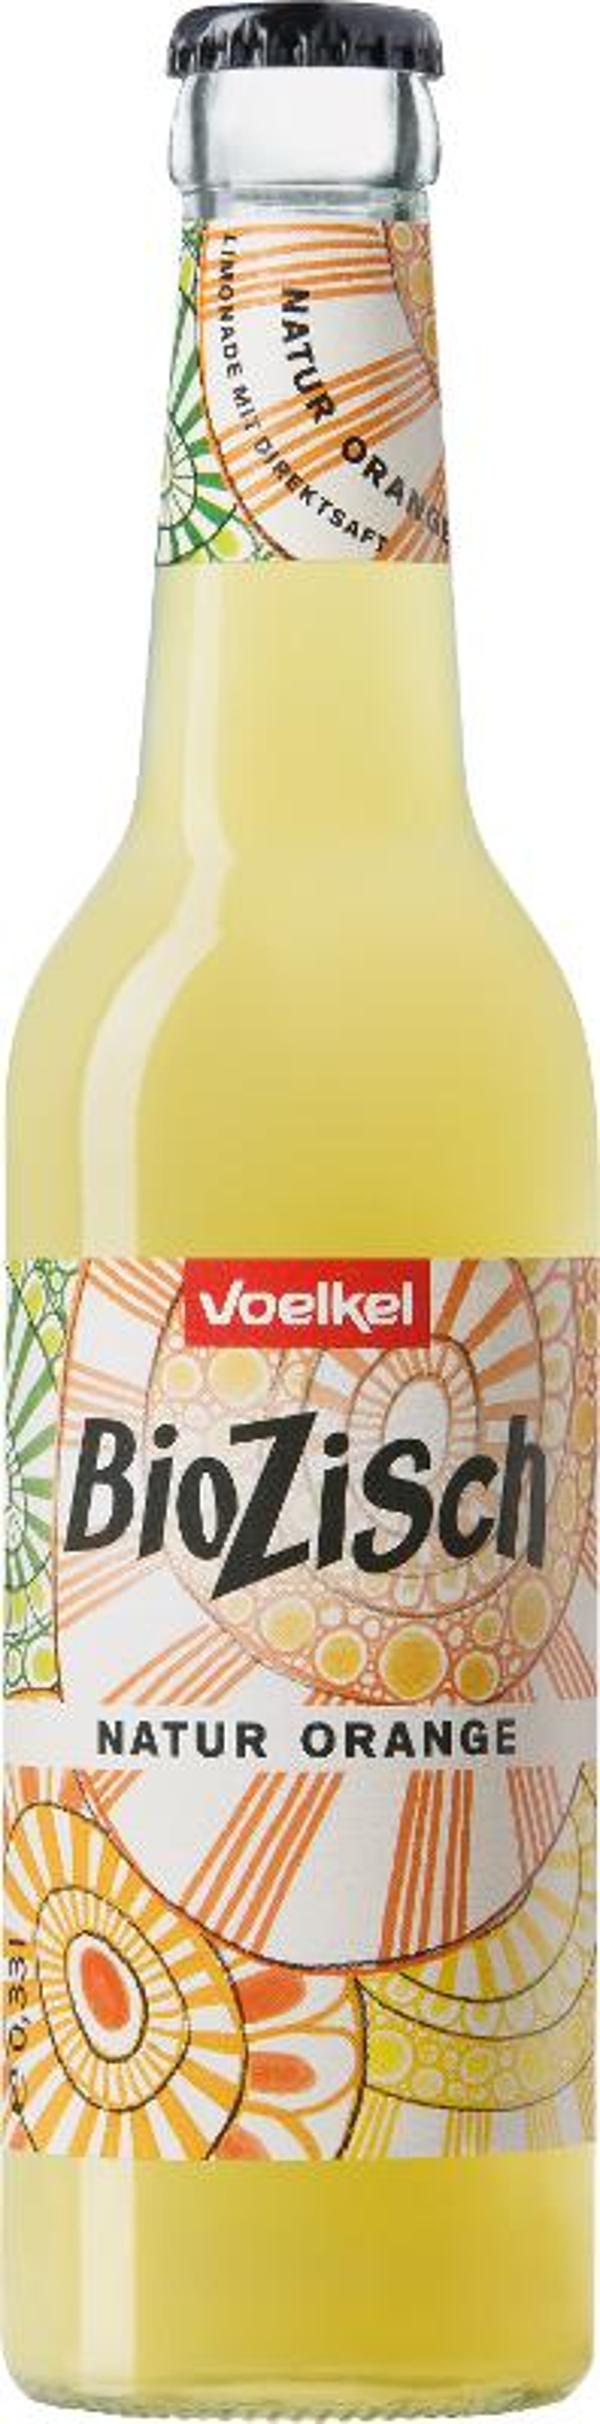 Produktfoto zu BioZisch Orange 0,33l Flasche